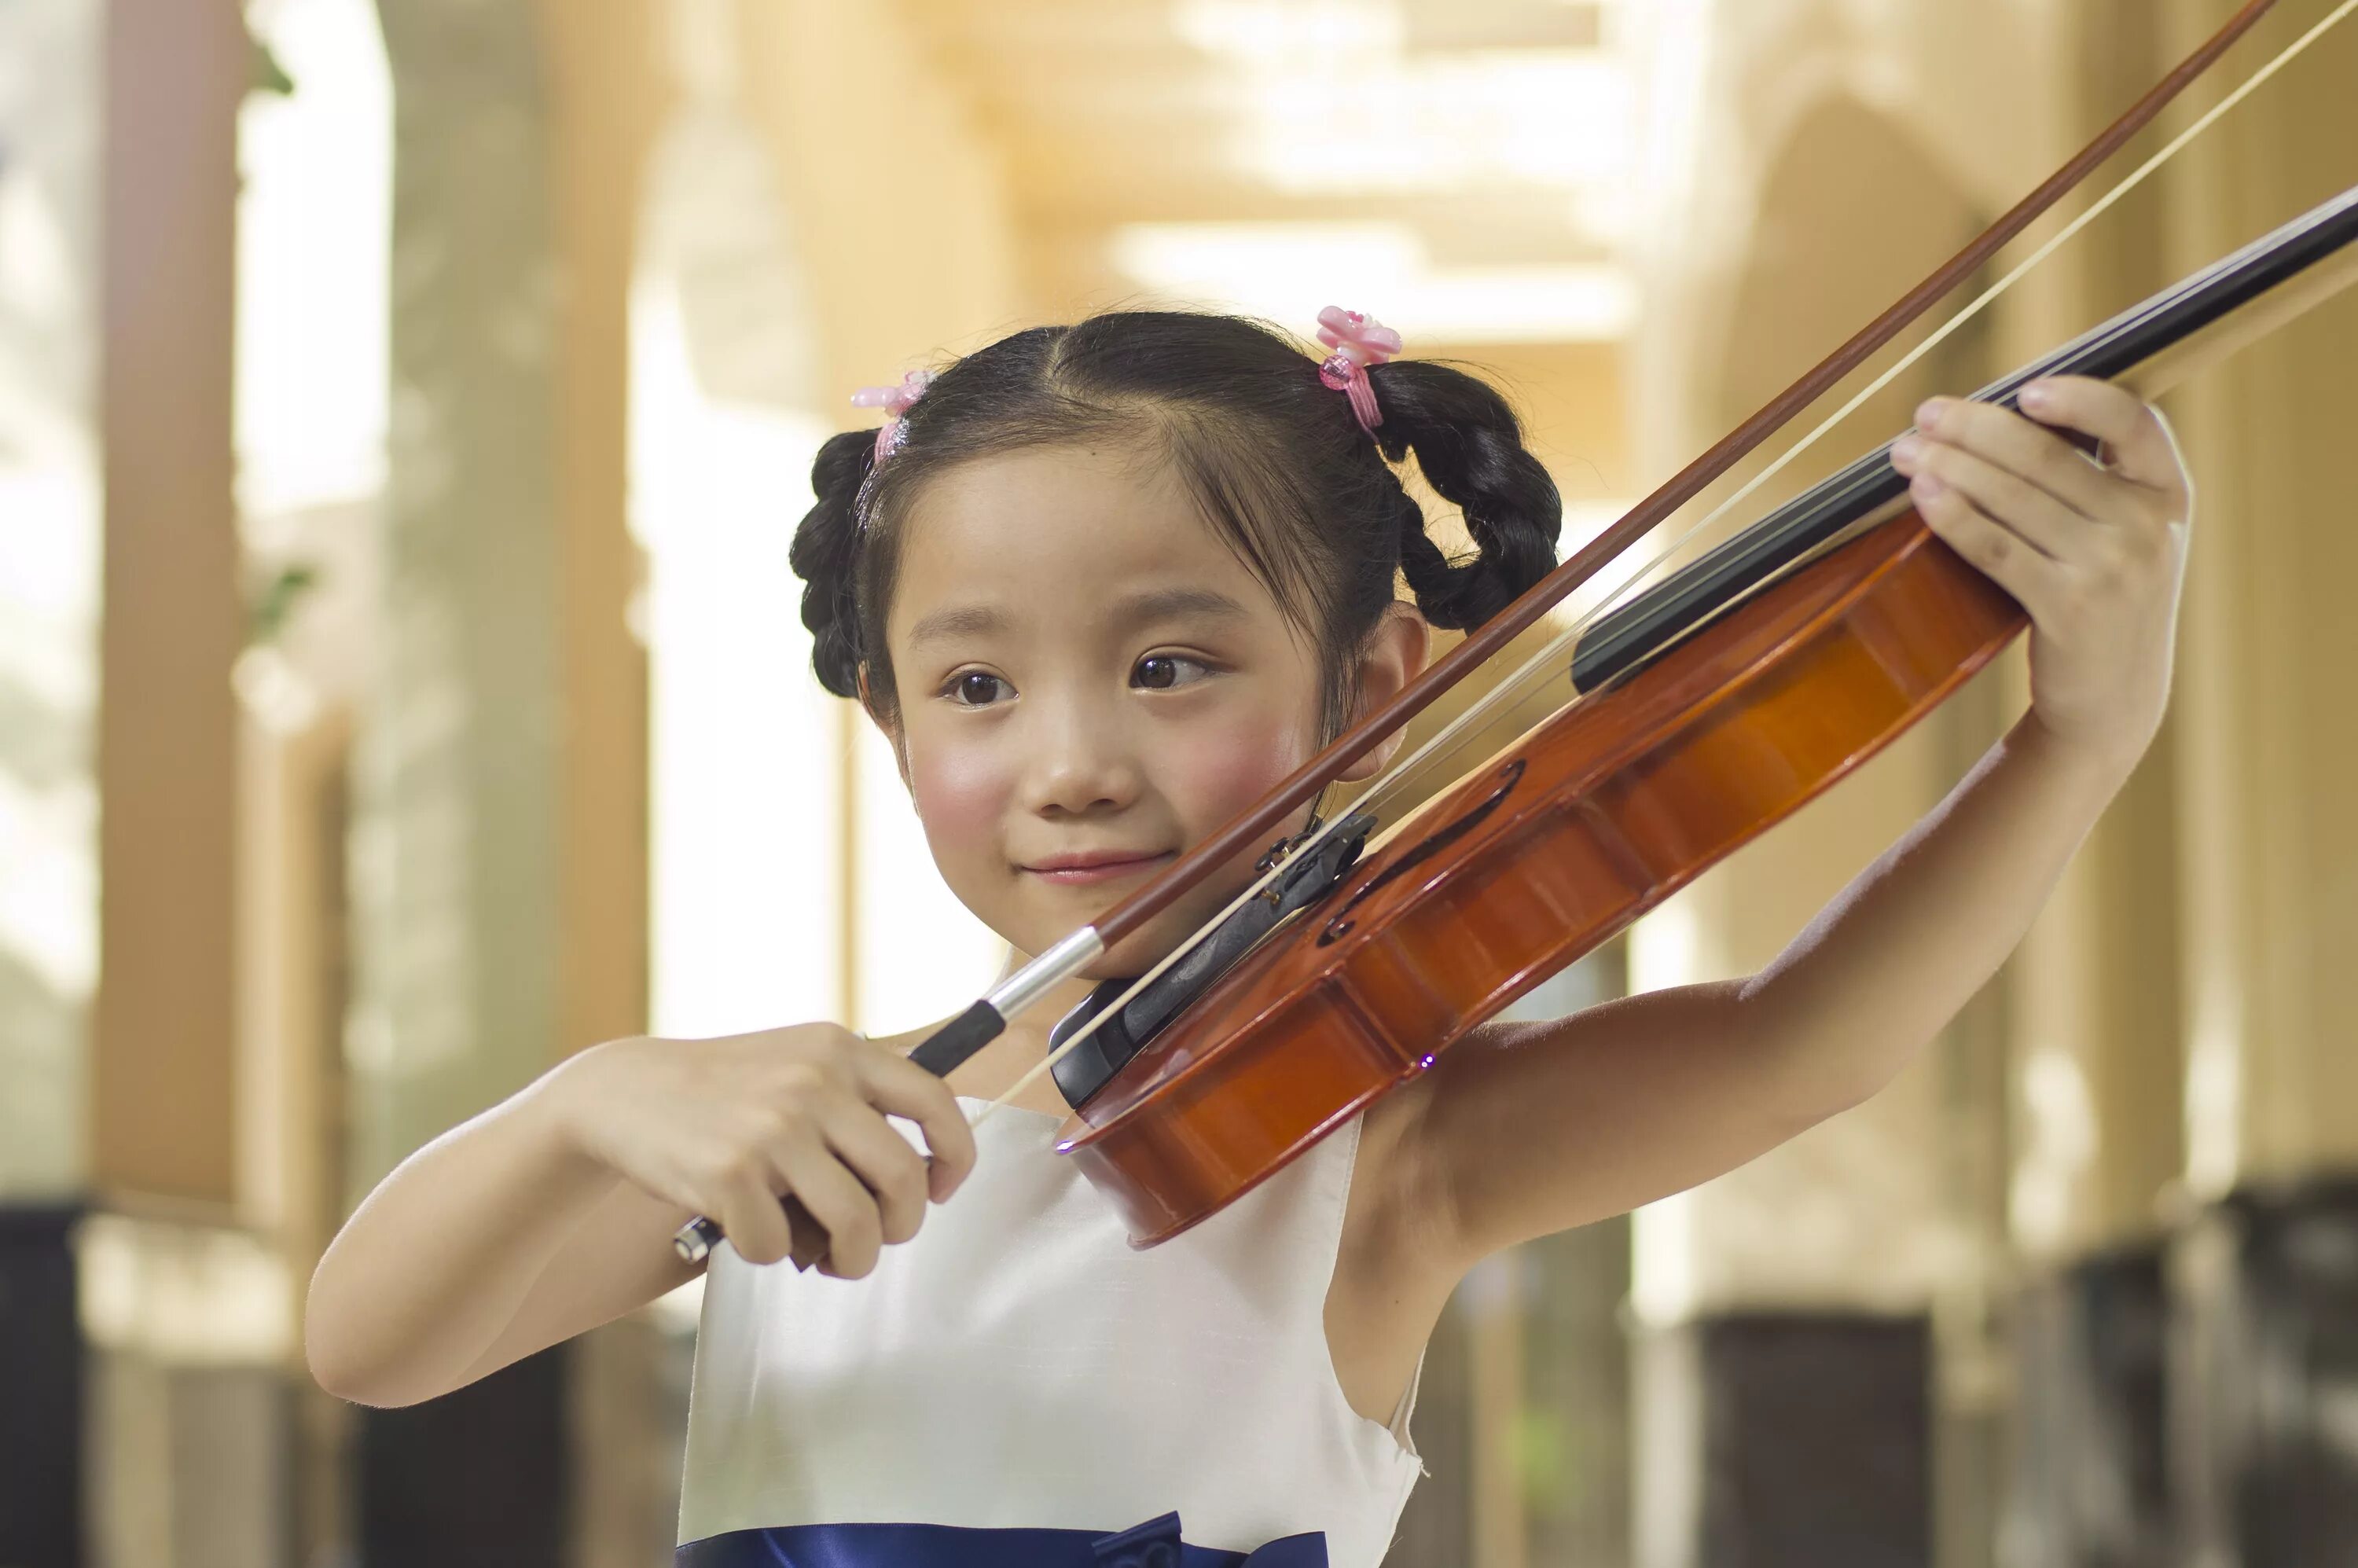 He plays the violin better. Ребенок играющий на скрипке. Скрипка для детей. Китайская скрипачка девочка. Девочка со скрипкой в муз школе.